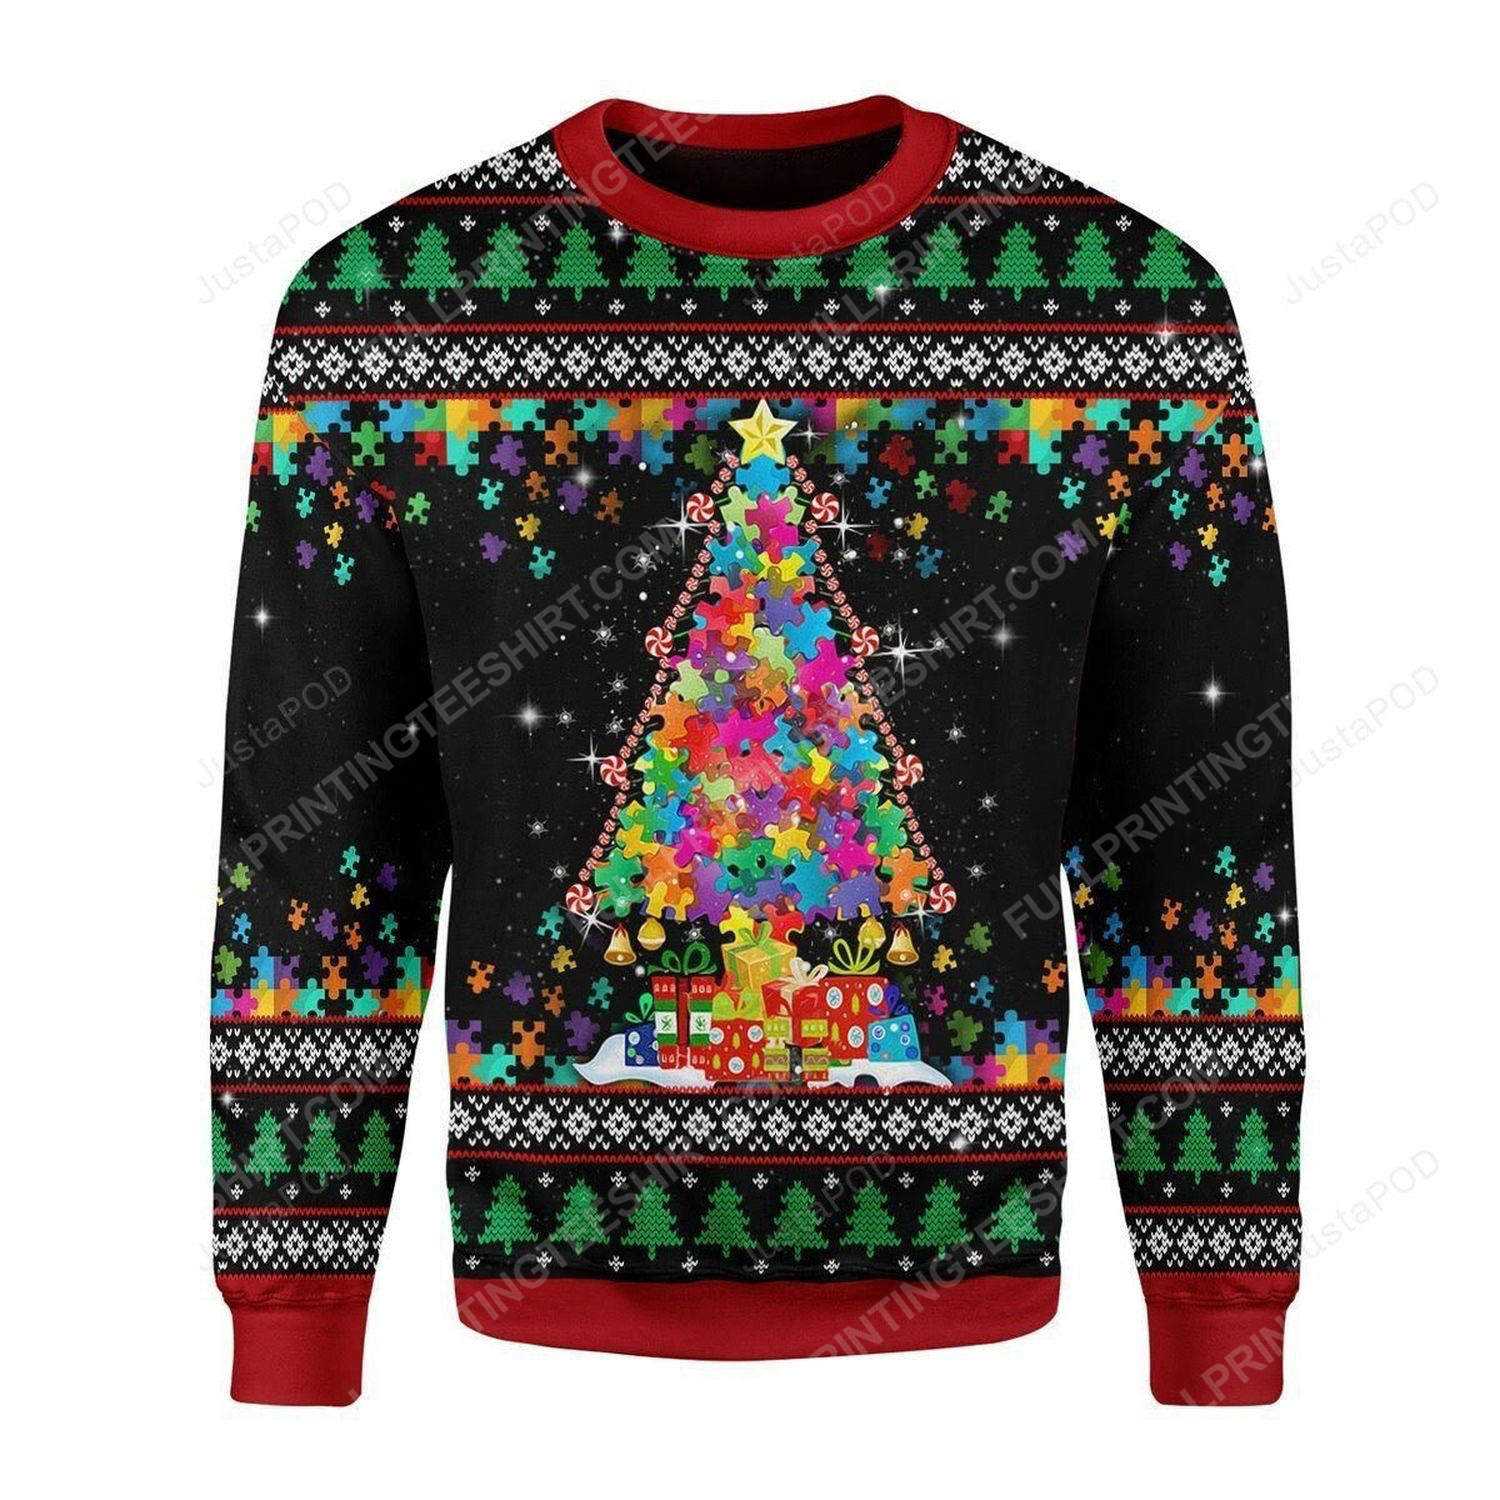 Autism awareness christmas tree christmas gift ugly christmas sweater